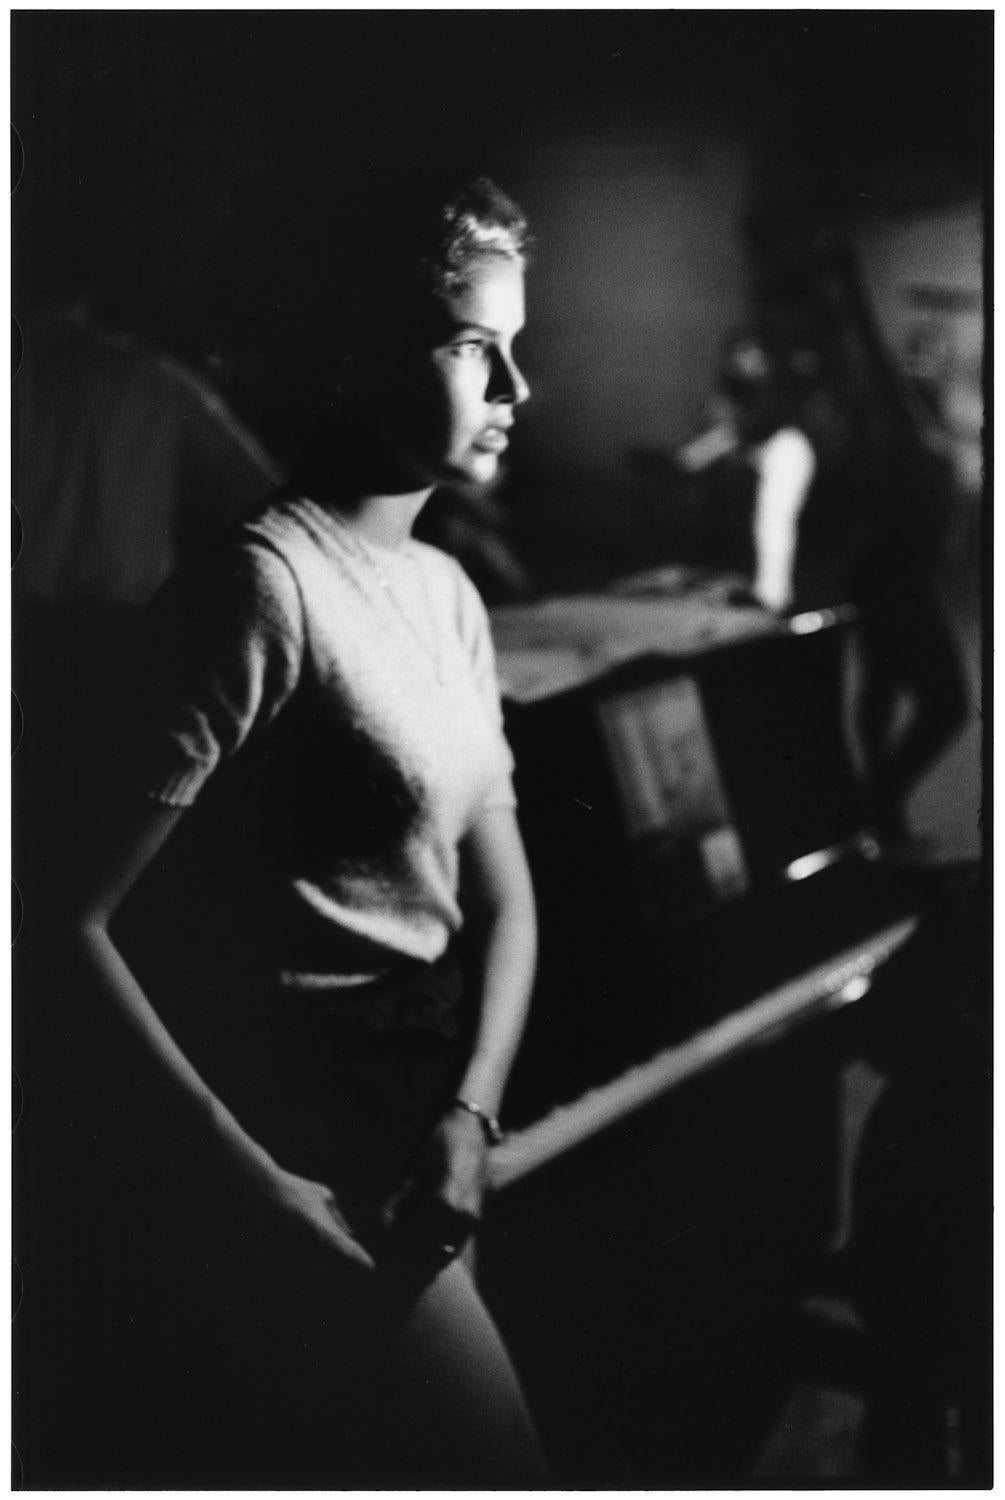 USA, New York City, 1954 - Elliott Erwitt (Schwarz-Weiß-Fotografie)
Signiert, betitelt und datiert auf dem beiliegenden Etikett des Künstlers
Silbergelatineabzug, später gedruckt

Erhältlich in vier Größen:
11 x 14 Zoll
16 x 20 Zoll
20 x 24 Zoll
30